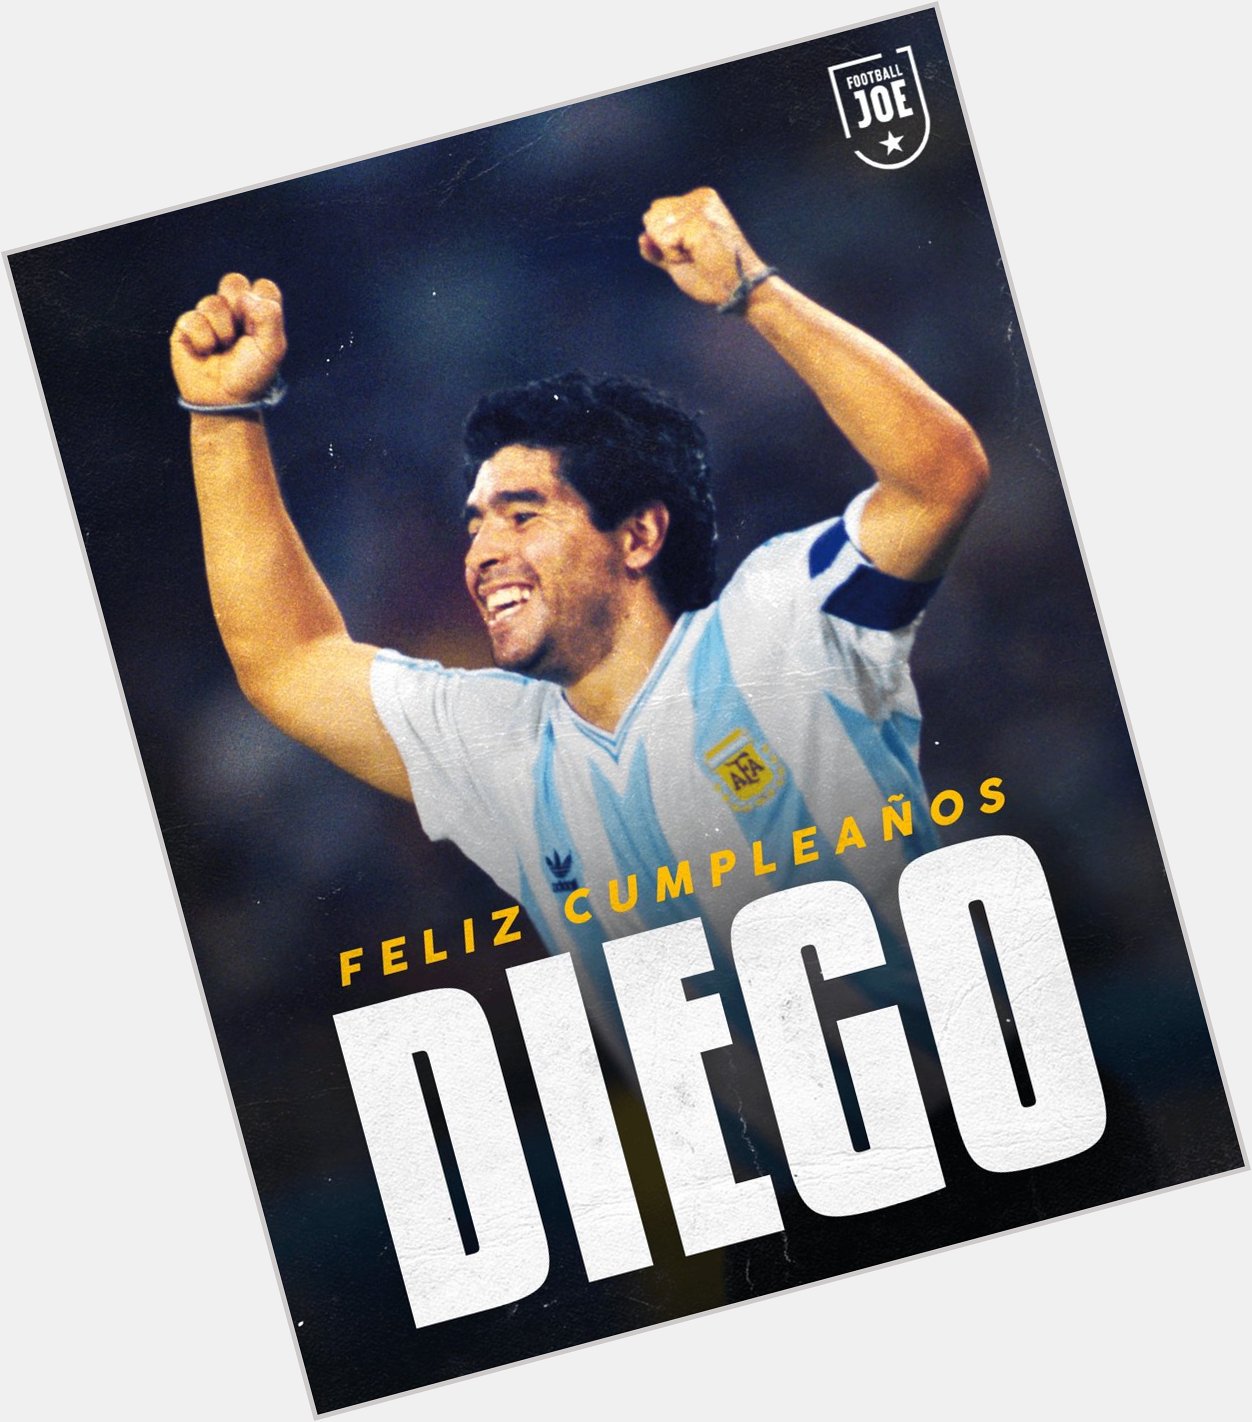 I know I am late but I m still say to Happy 60th birthday to Diego Armando Maradona 